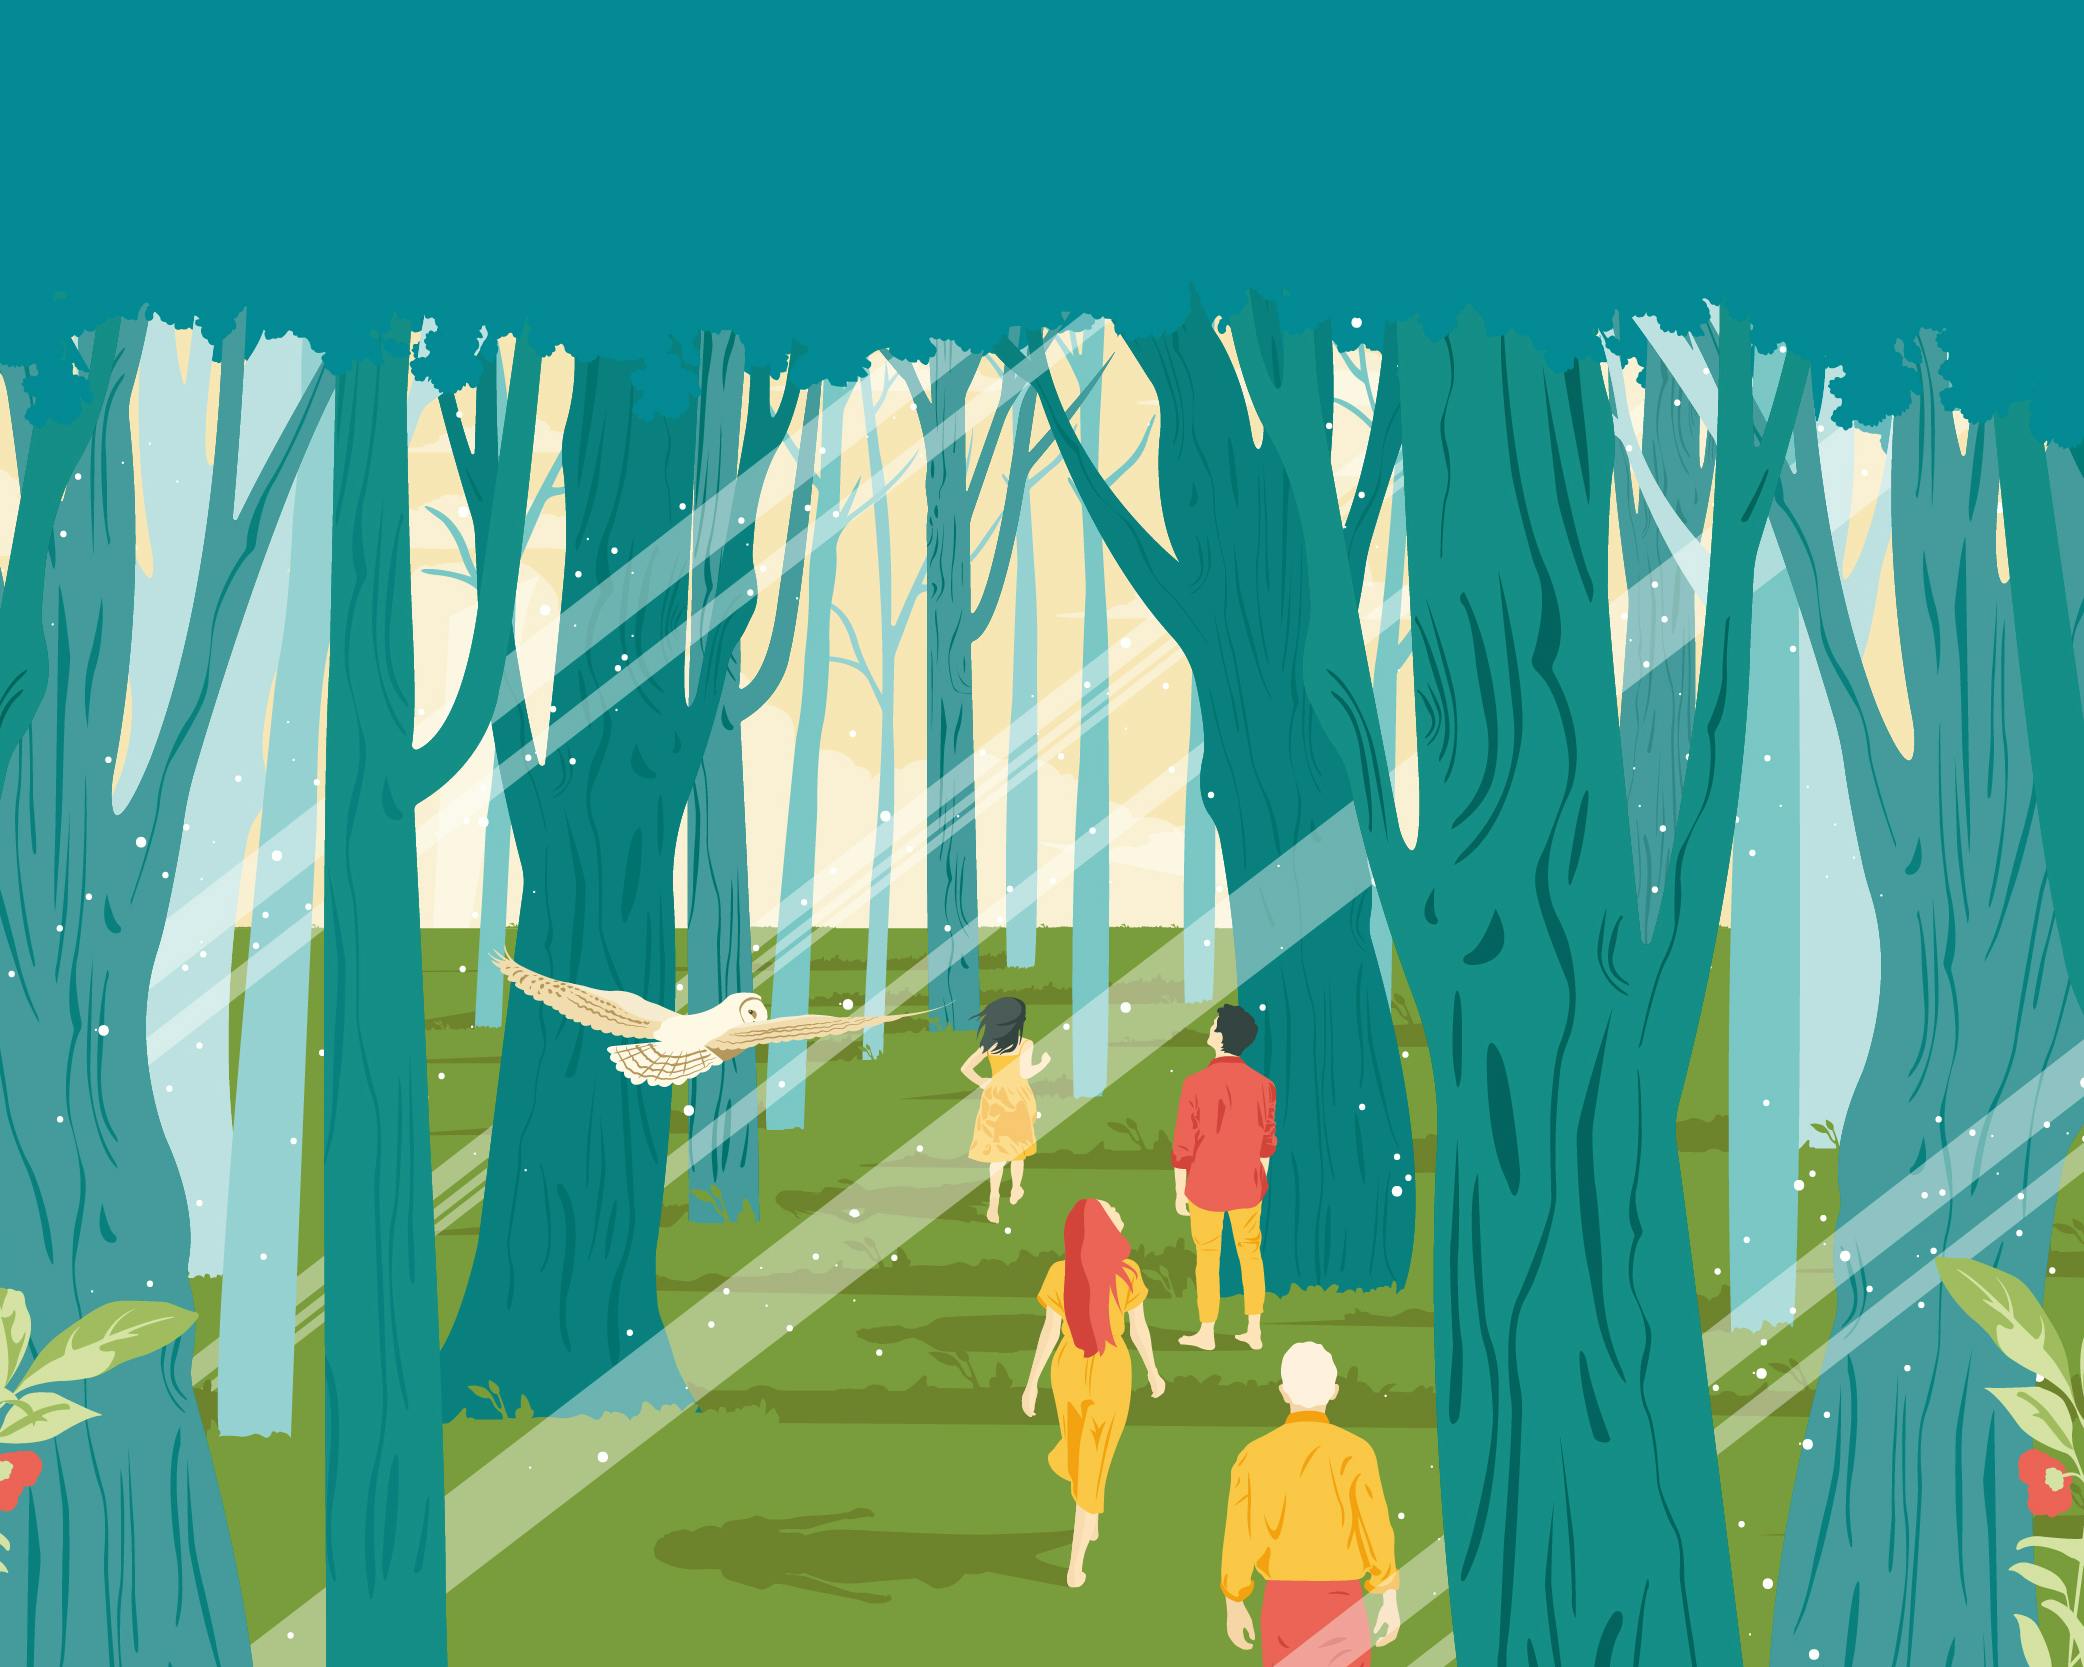 Poster grafico che rappresenta il bosco con persone che camminano, i colori dominanti sono verde e blu